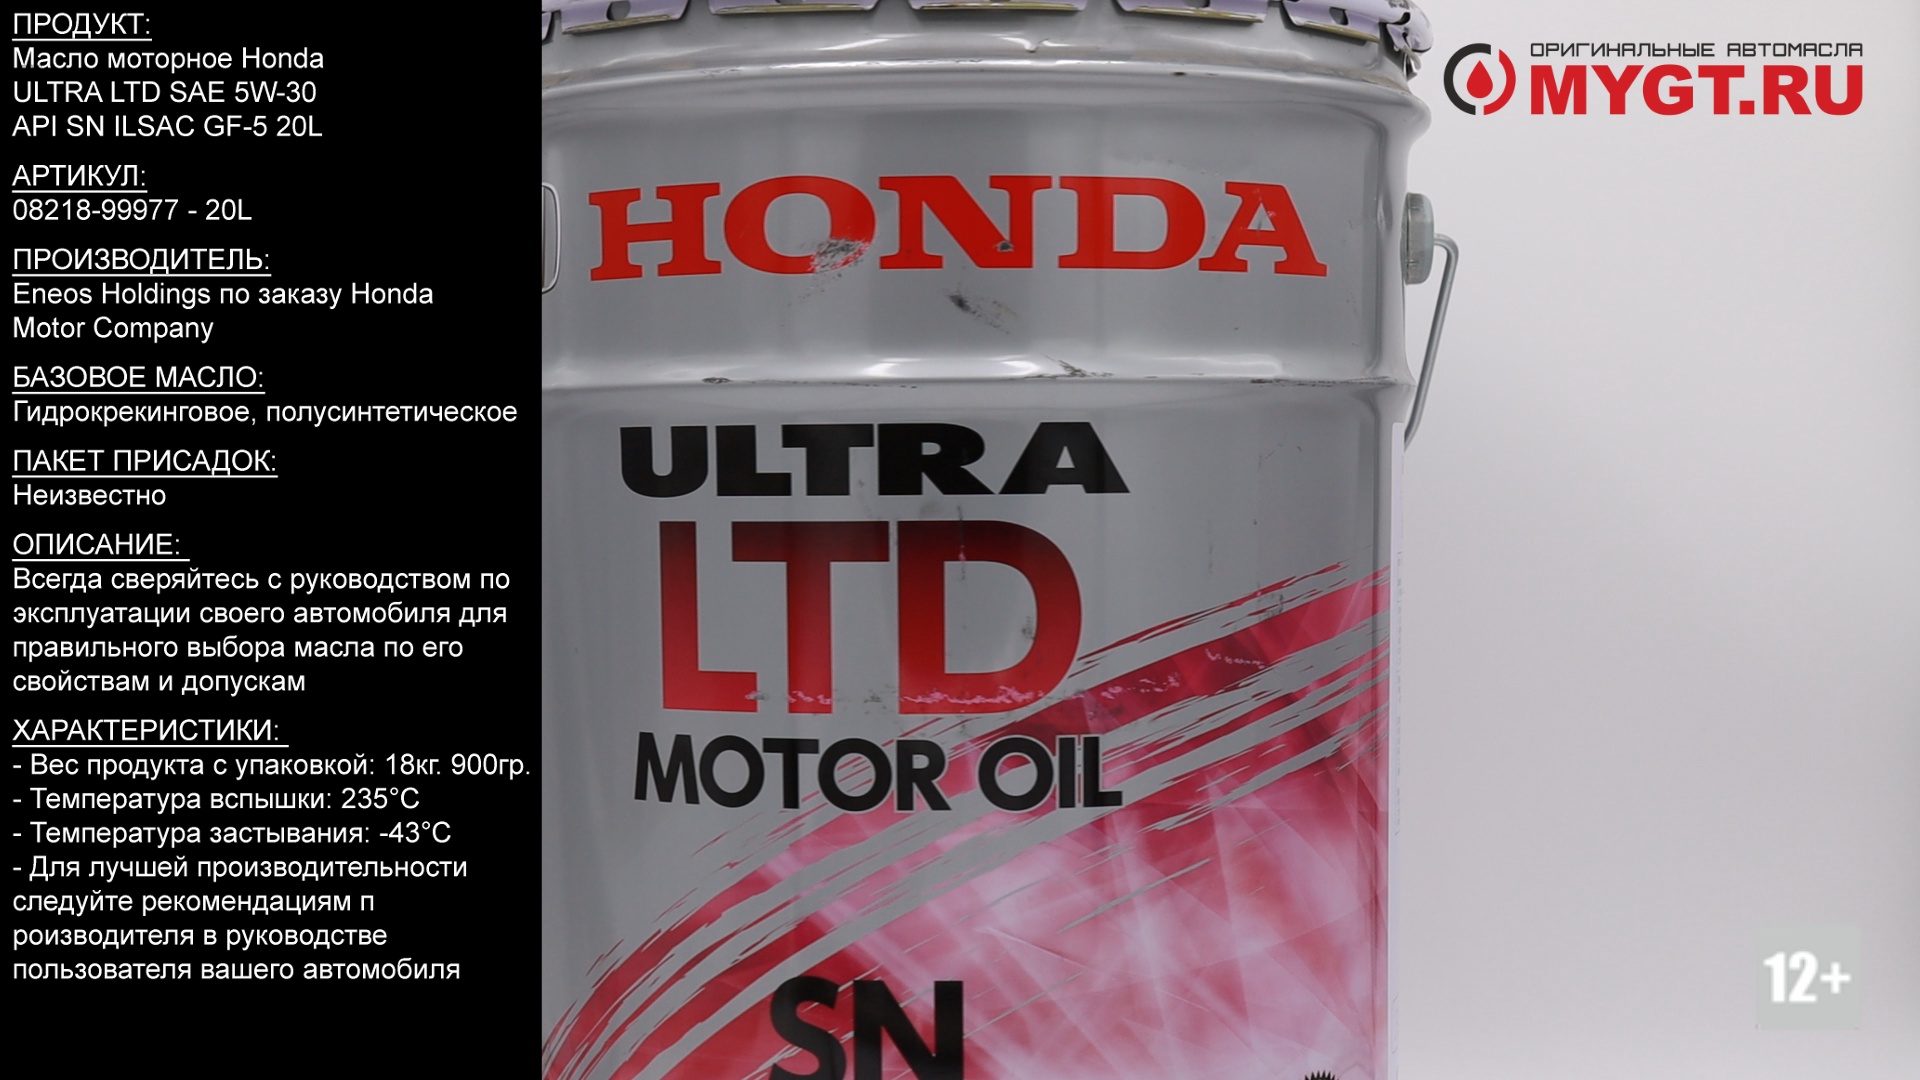 Масло ilsac gf 5 5w30. Honda Ultra Ltd 5w30 SN. Honda Ultra Leo Motor Oil SN 5w-30 ILSAC gf-5. Honda Ultra Ltd SM 5w-30. Honda Ultra Ltd SAE 5w-30.